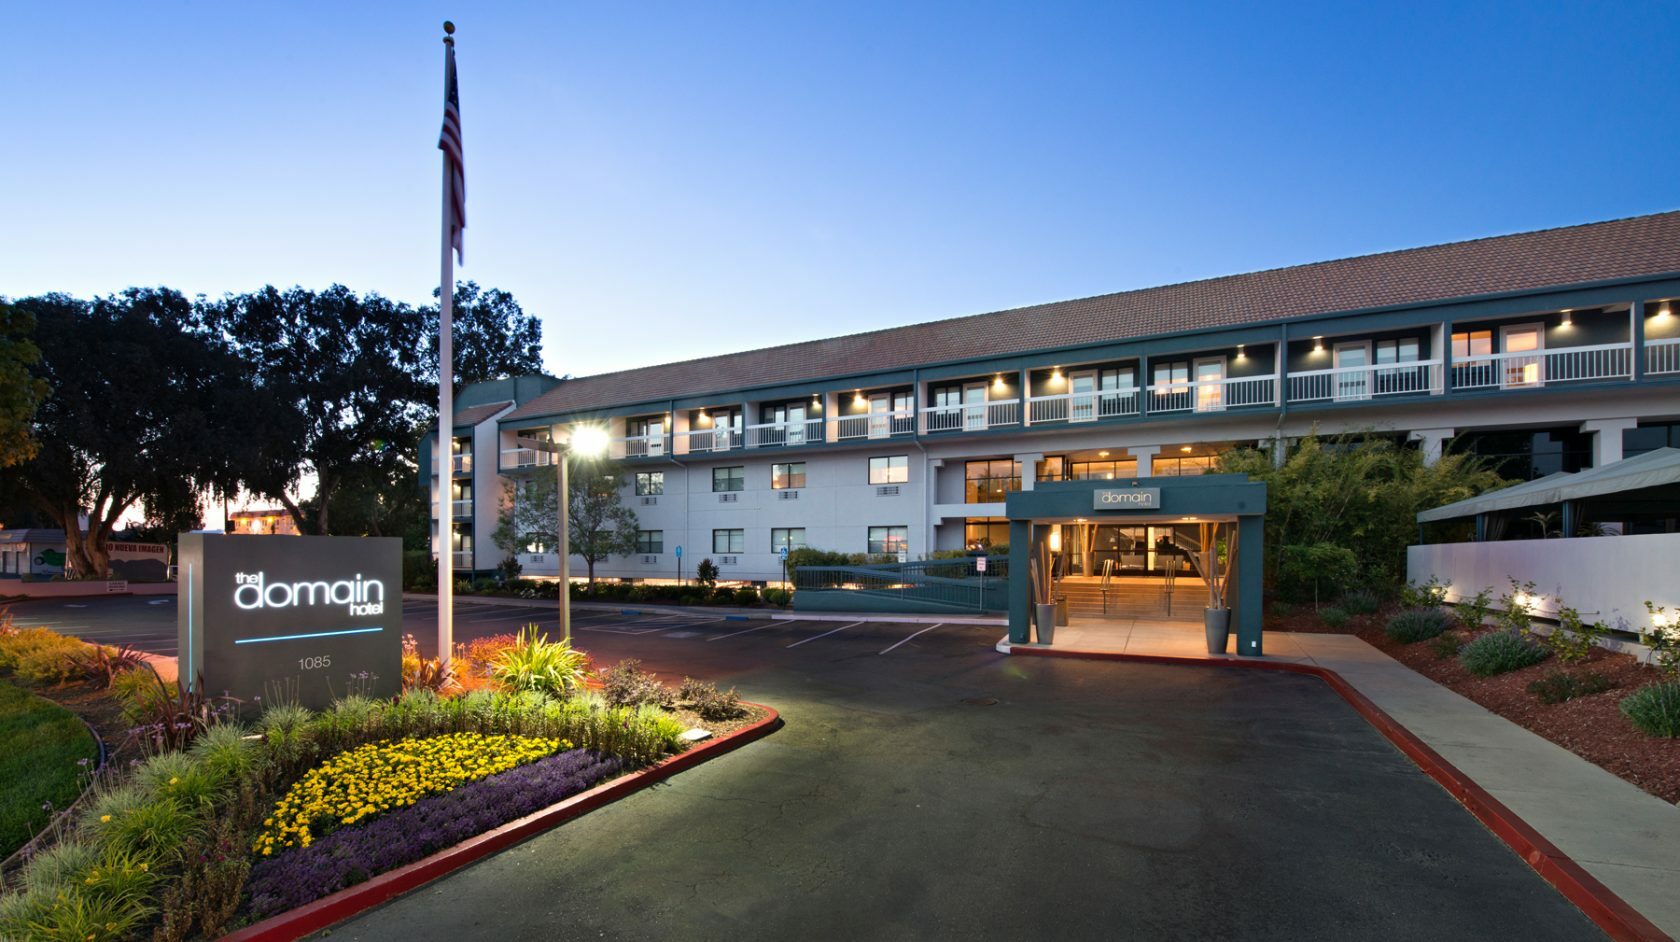 Photo of Domain Hotel Sunnyvale, Sunnyvale, CA